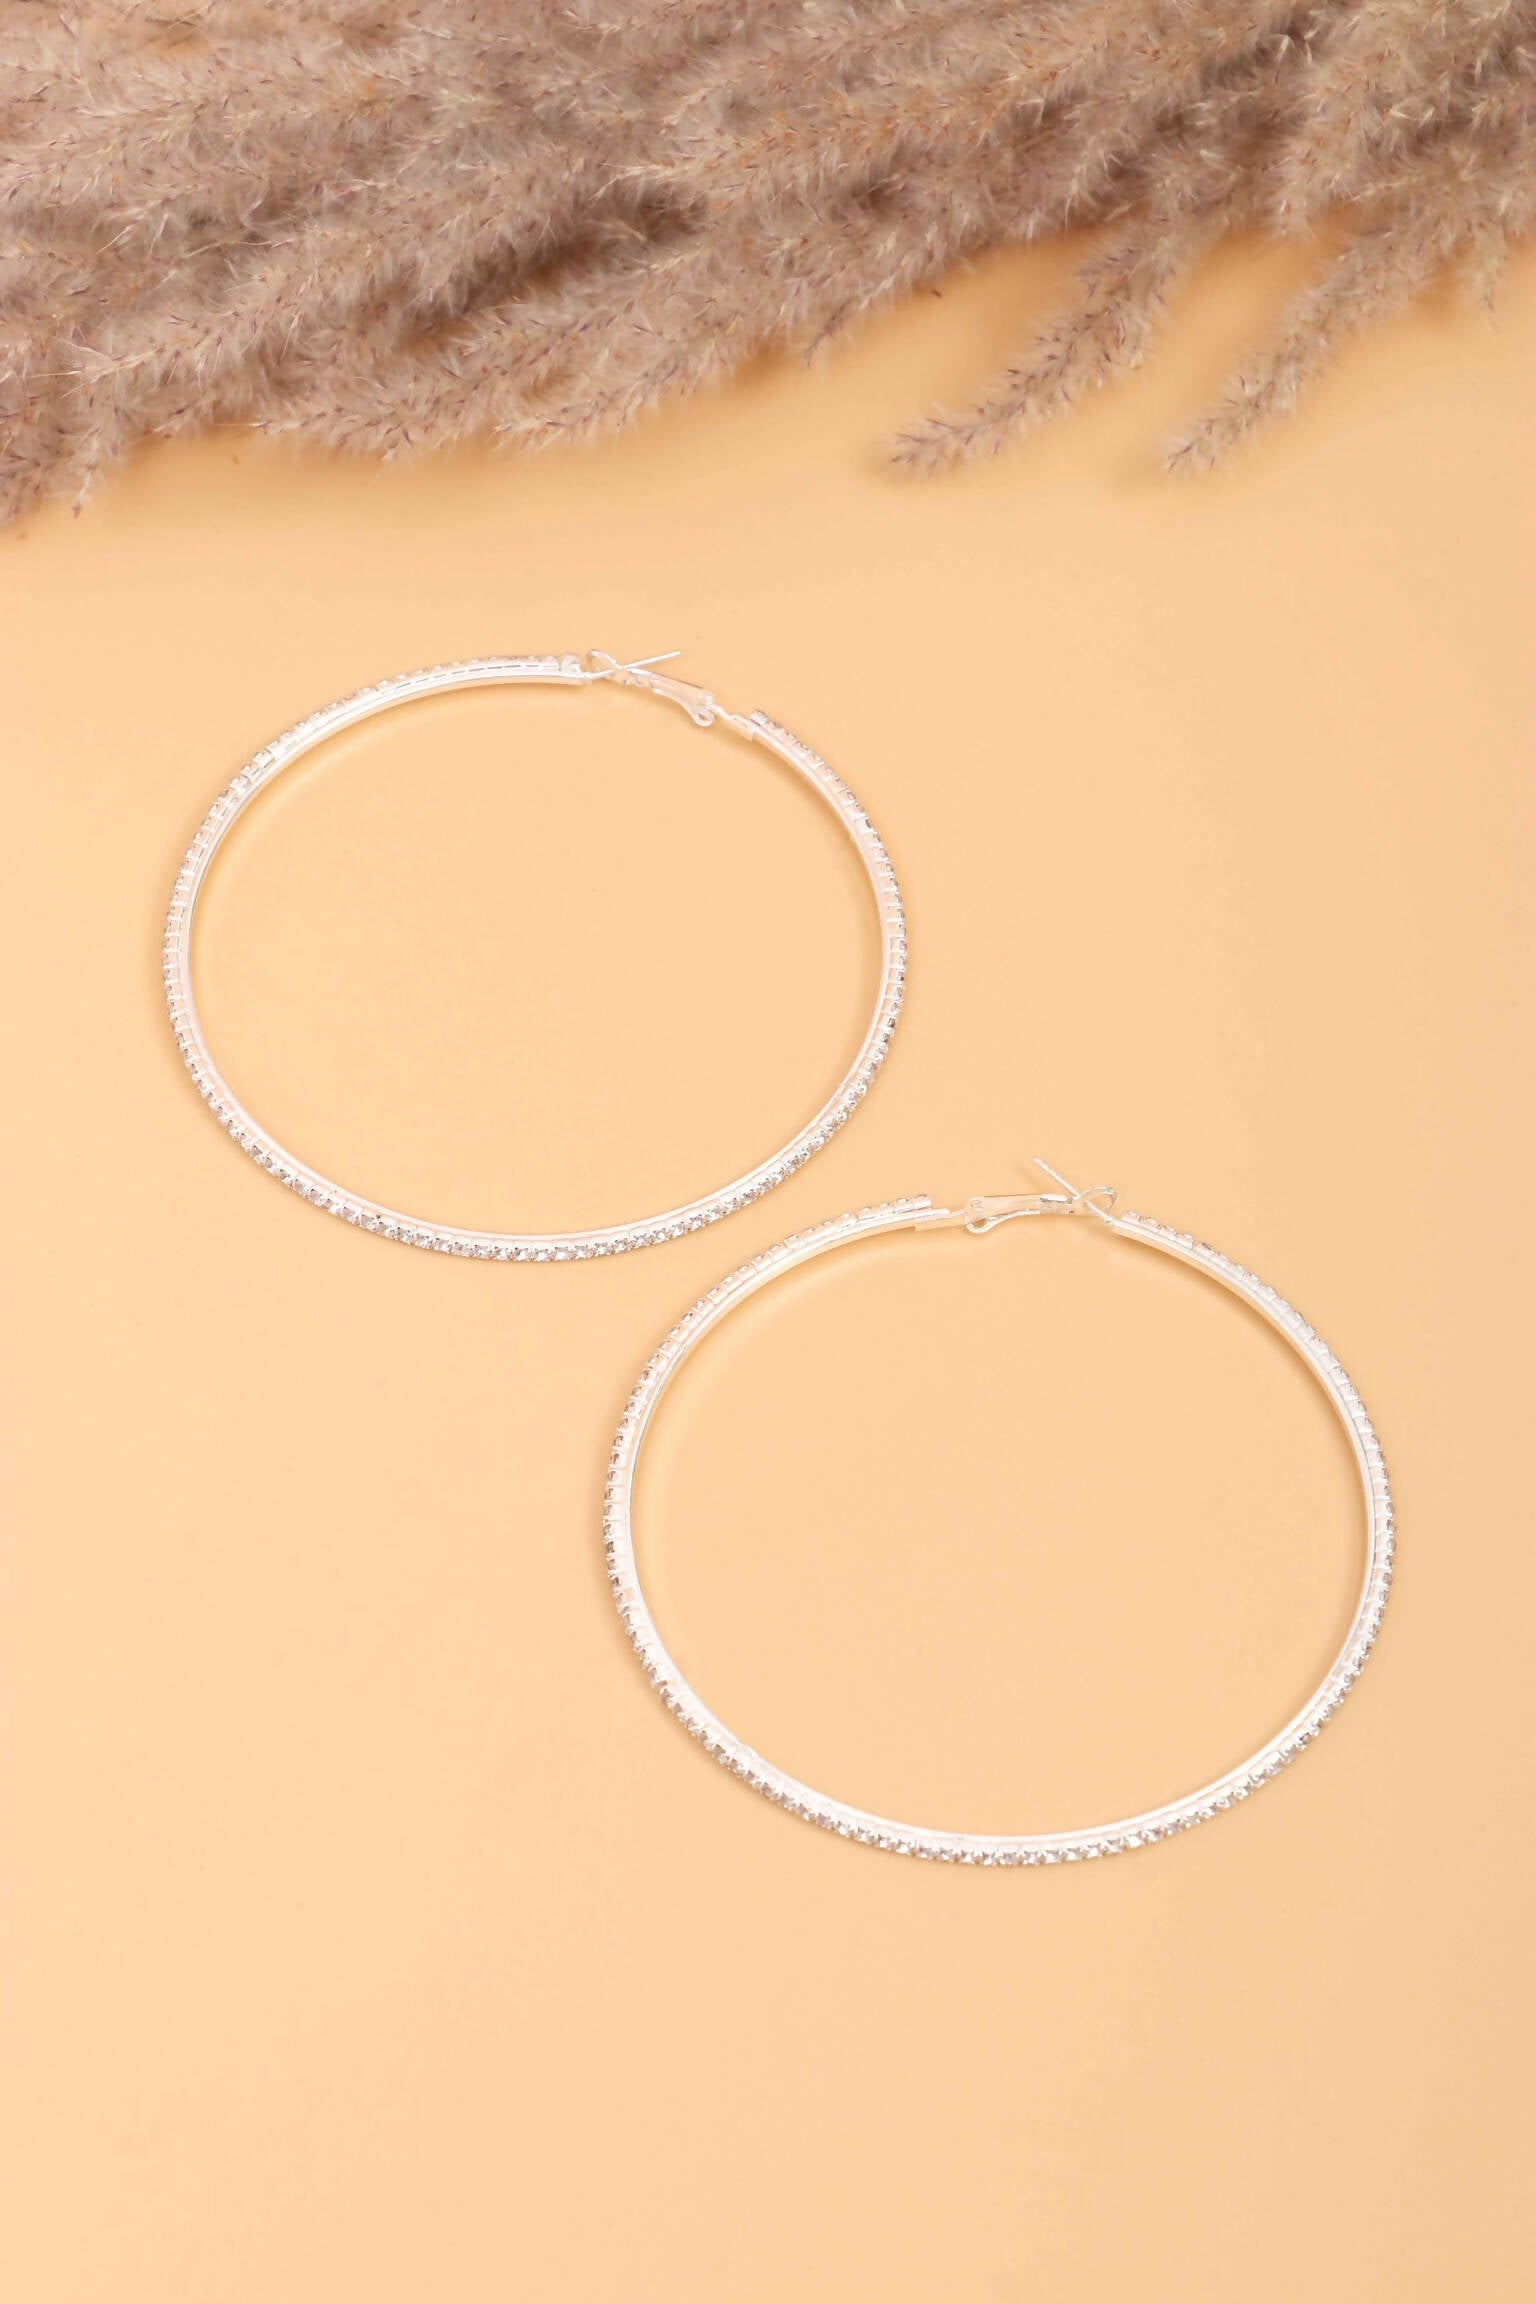 Layan | Hoop Earrings | Women Jewelry Earrings | New